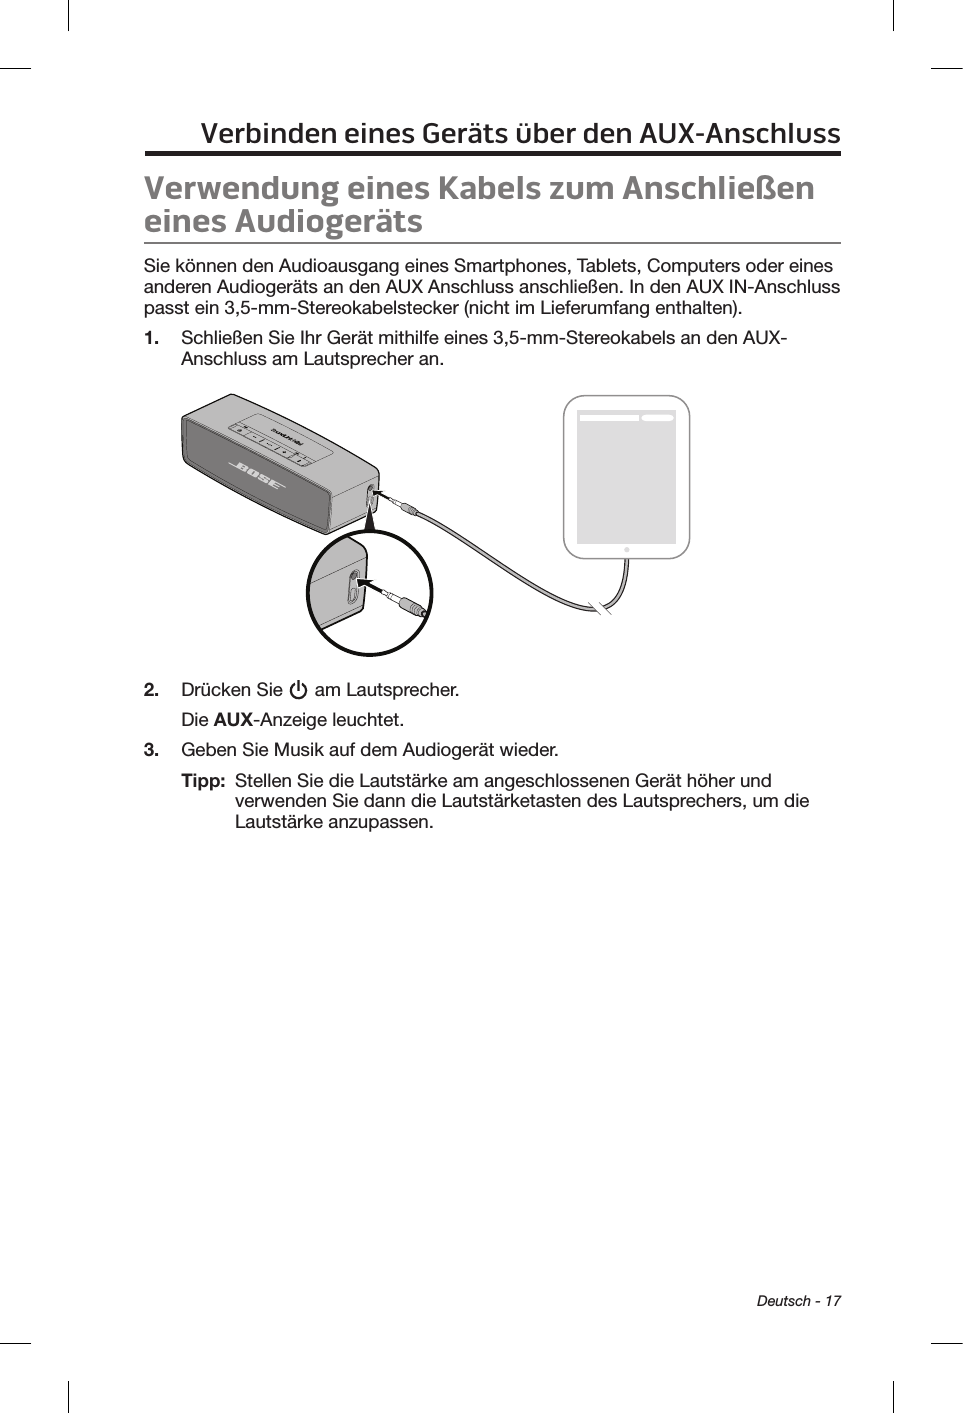  Deutsch - 17Verbinden eines Geräts über den AUX-AnschlussVerwendung eines Kabels zum Anschließen eines AudiogerätsSie können den Audioausgang eines Smartphones, Tablets, Computers oder eines anderen Audiogeräts an den AUX Anschluss anschließen. In den AUX IN-Anschluss passt ein 3,5-mm-Stereokabelstecker (nicht im Lieferumfang enthalten).1.  Schließen Sie Ihr Gerät mithilfe eines 3,5-mm-Stereokabels an den AUX-Anschluss am Lautsprecher an.2.  Drücken Sie   am Lautsprecher.Die AUX-Anzeige leuchtet.3.  Geben Sie Musik auf dem Audiogerät wieder.Tipp:   Stellen Sie die Lautstärke am angeschlossenen Gerät höher und verwenden Sie dann die Lautstärketasten des Lautsprechers, um die Lautstärke anzupassen.